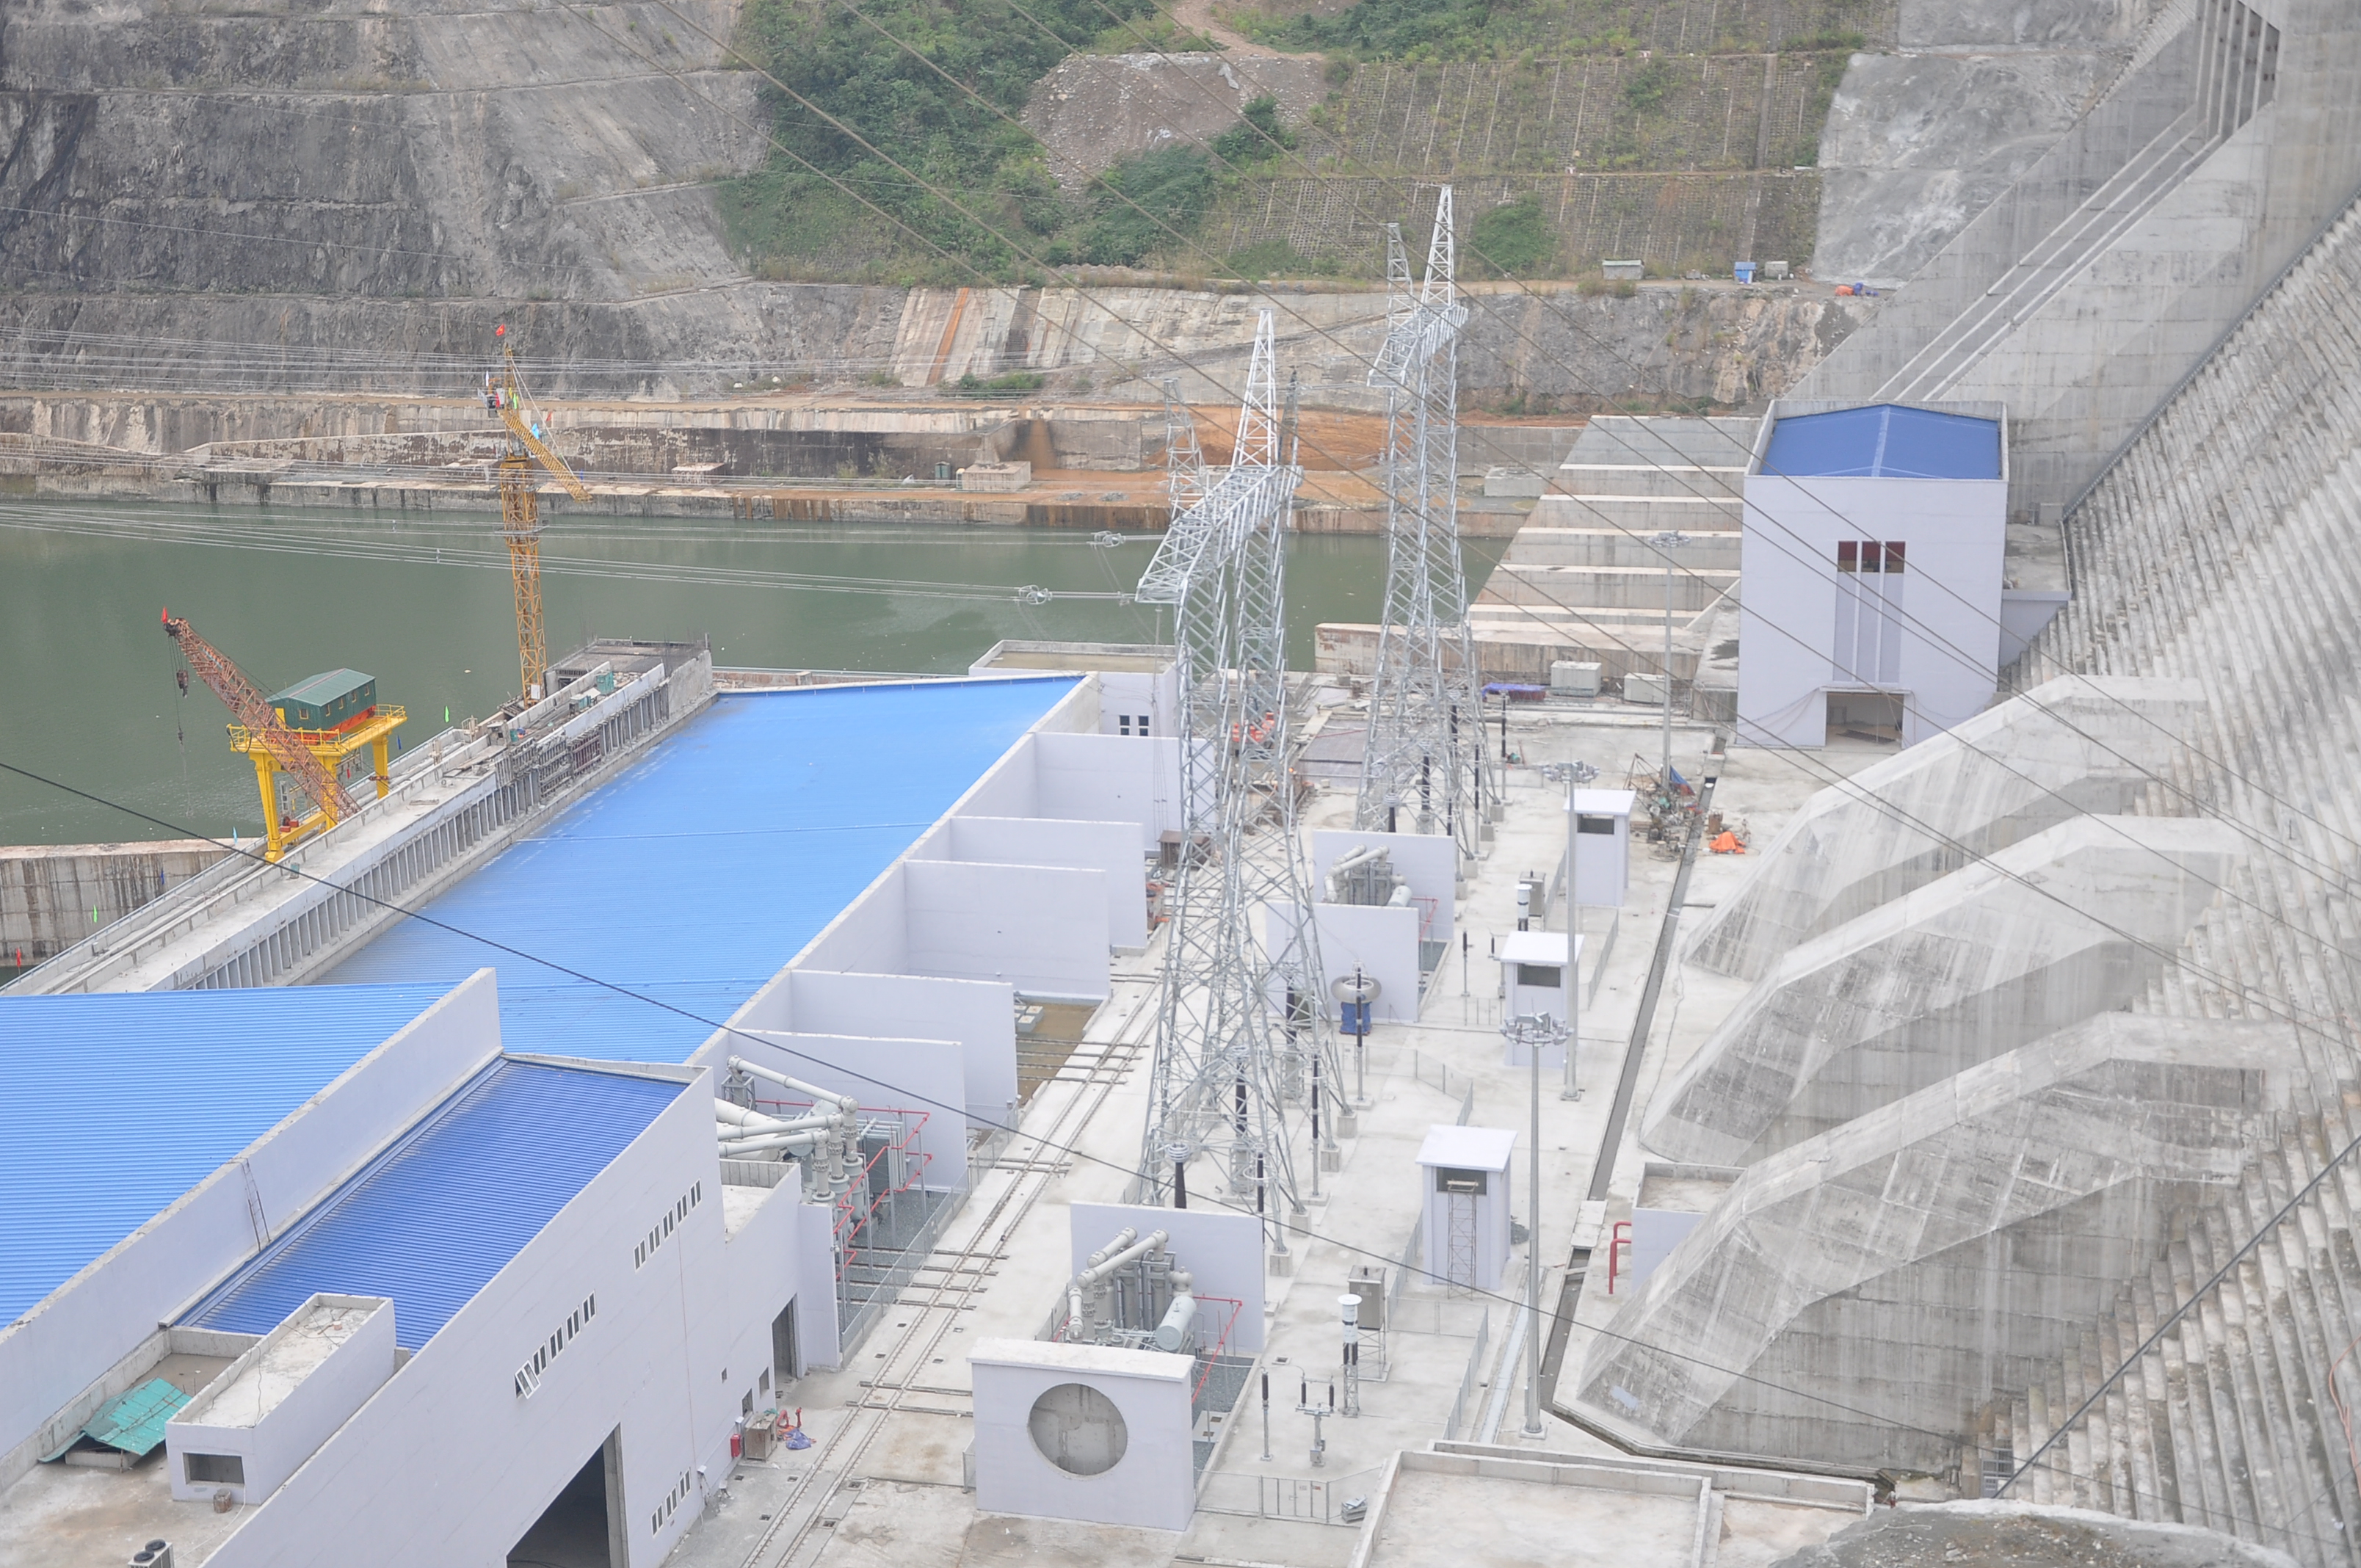 
Dưới đập Thủy điện Lai Châu, các hạng mục xây dựng liên quan đến nhà điều hành, hệ thống truyền tải đã sẵn sàng cho năm 2016, khi hai tổ máy 2 và 3 hoàn thành và chính thức phát điện hoàn thiện
